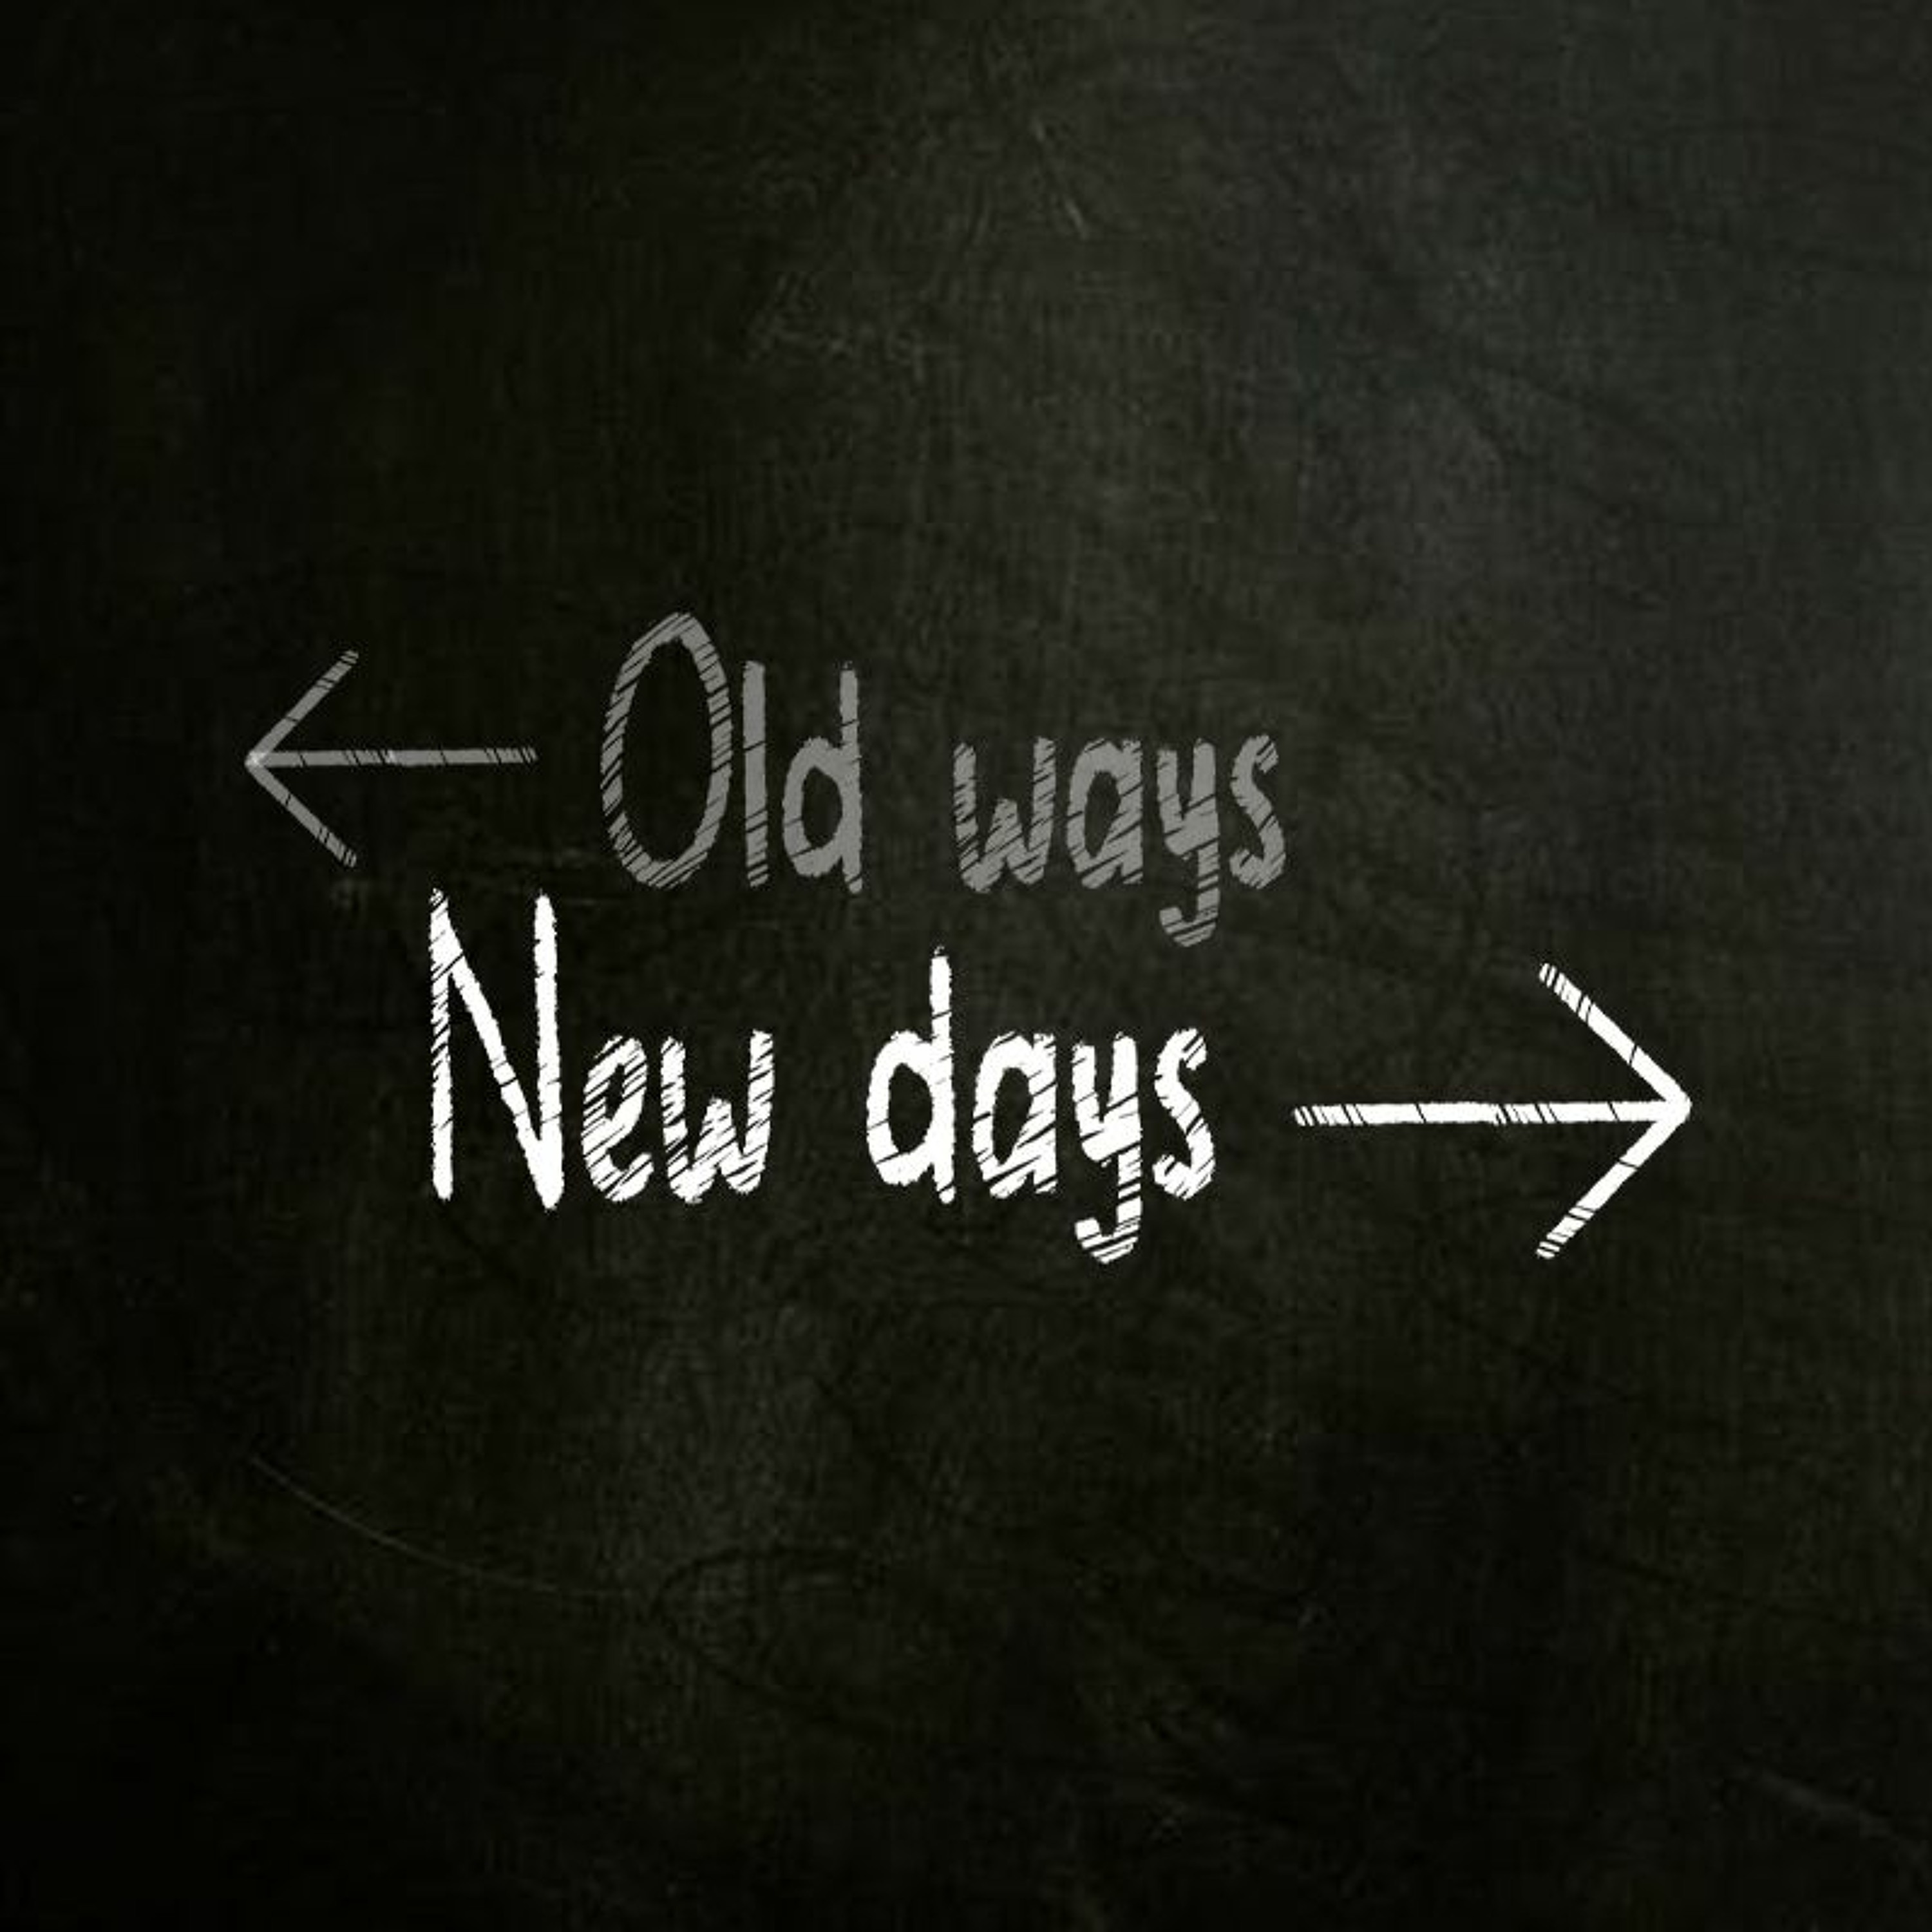 Old ways new days | Praising God